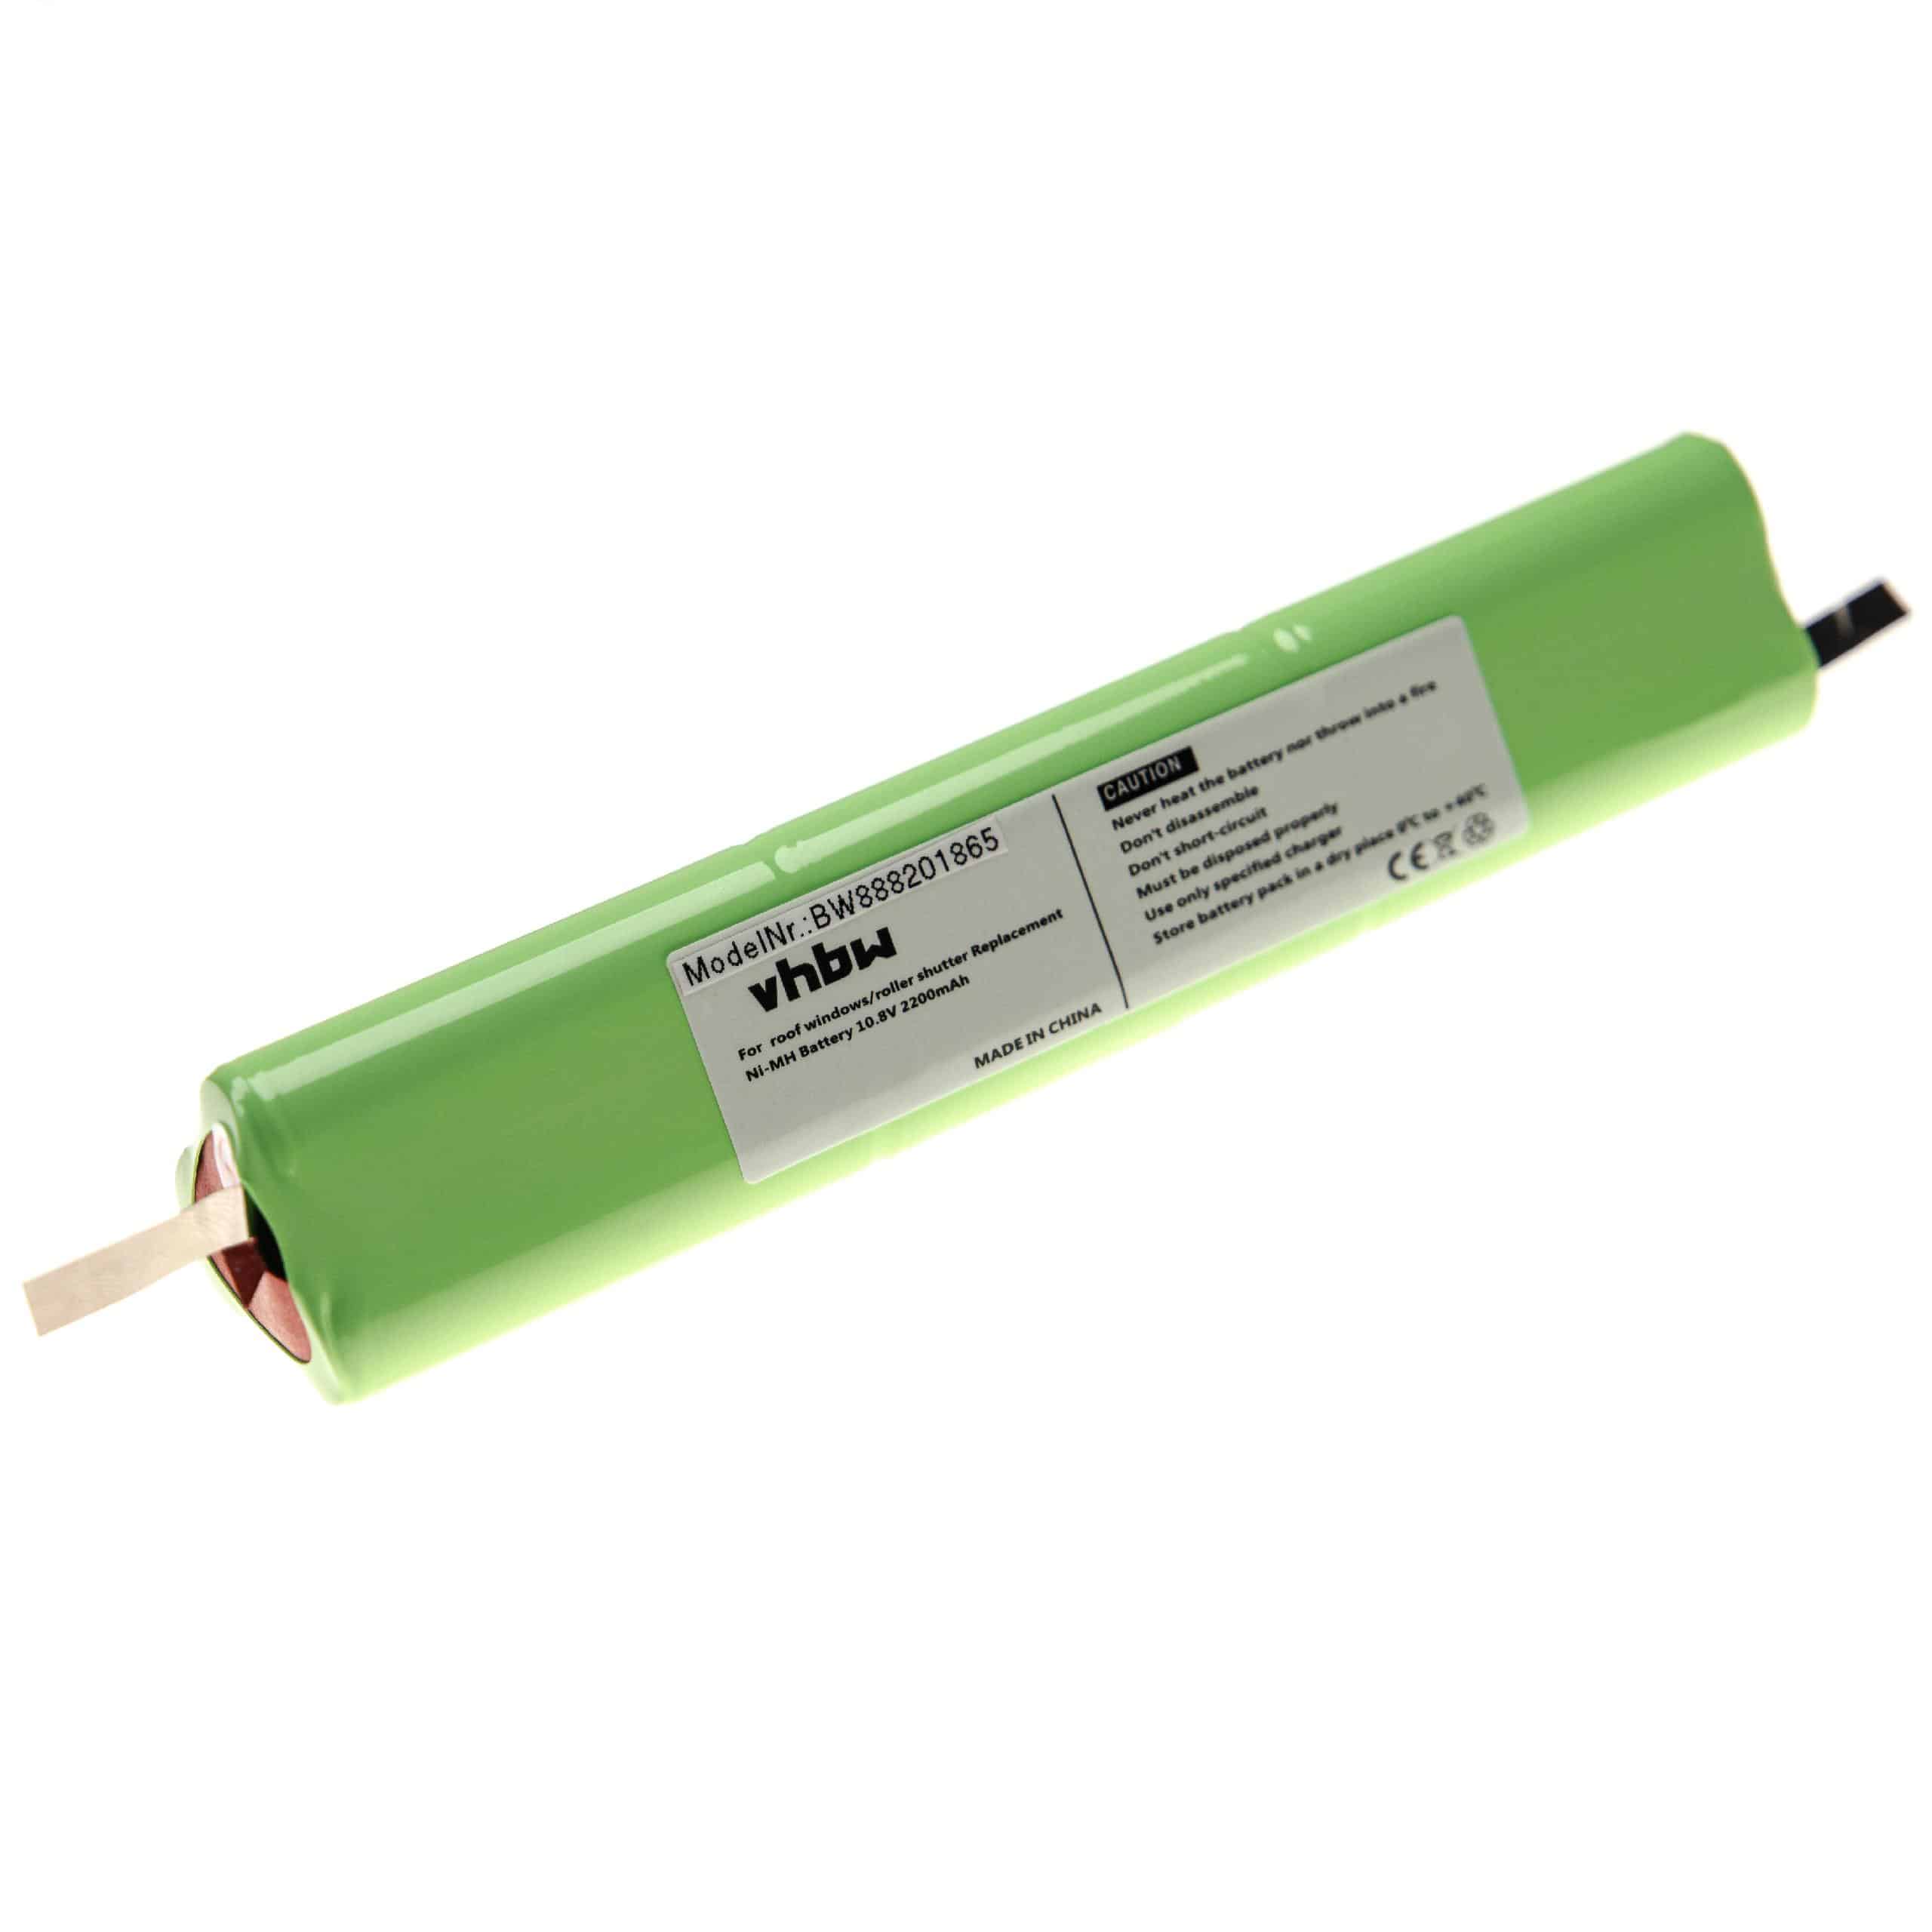 Batería reemplaza Velux 946933, 946930 para persiana claraboya - 2200 mAh 10,8 V NiMH